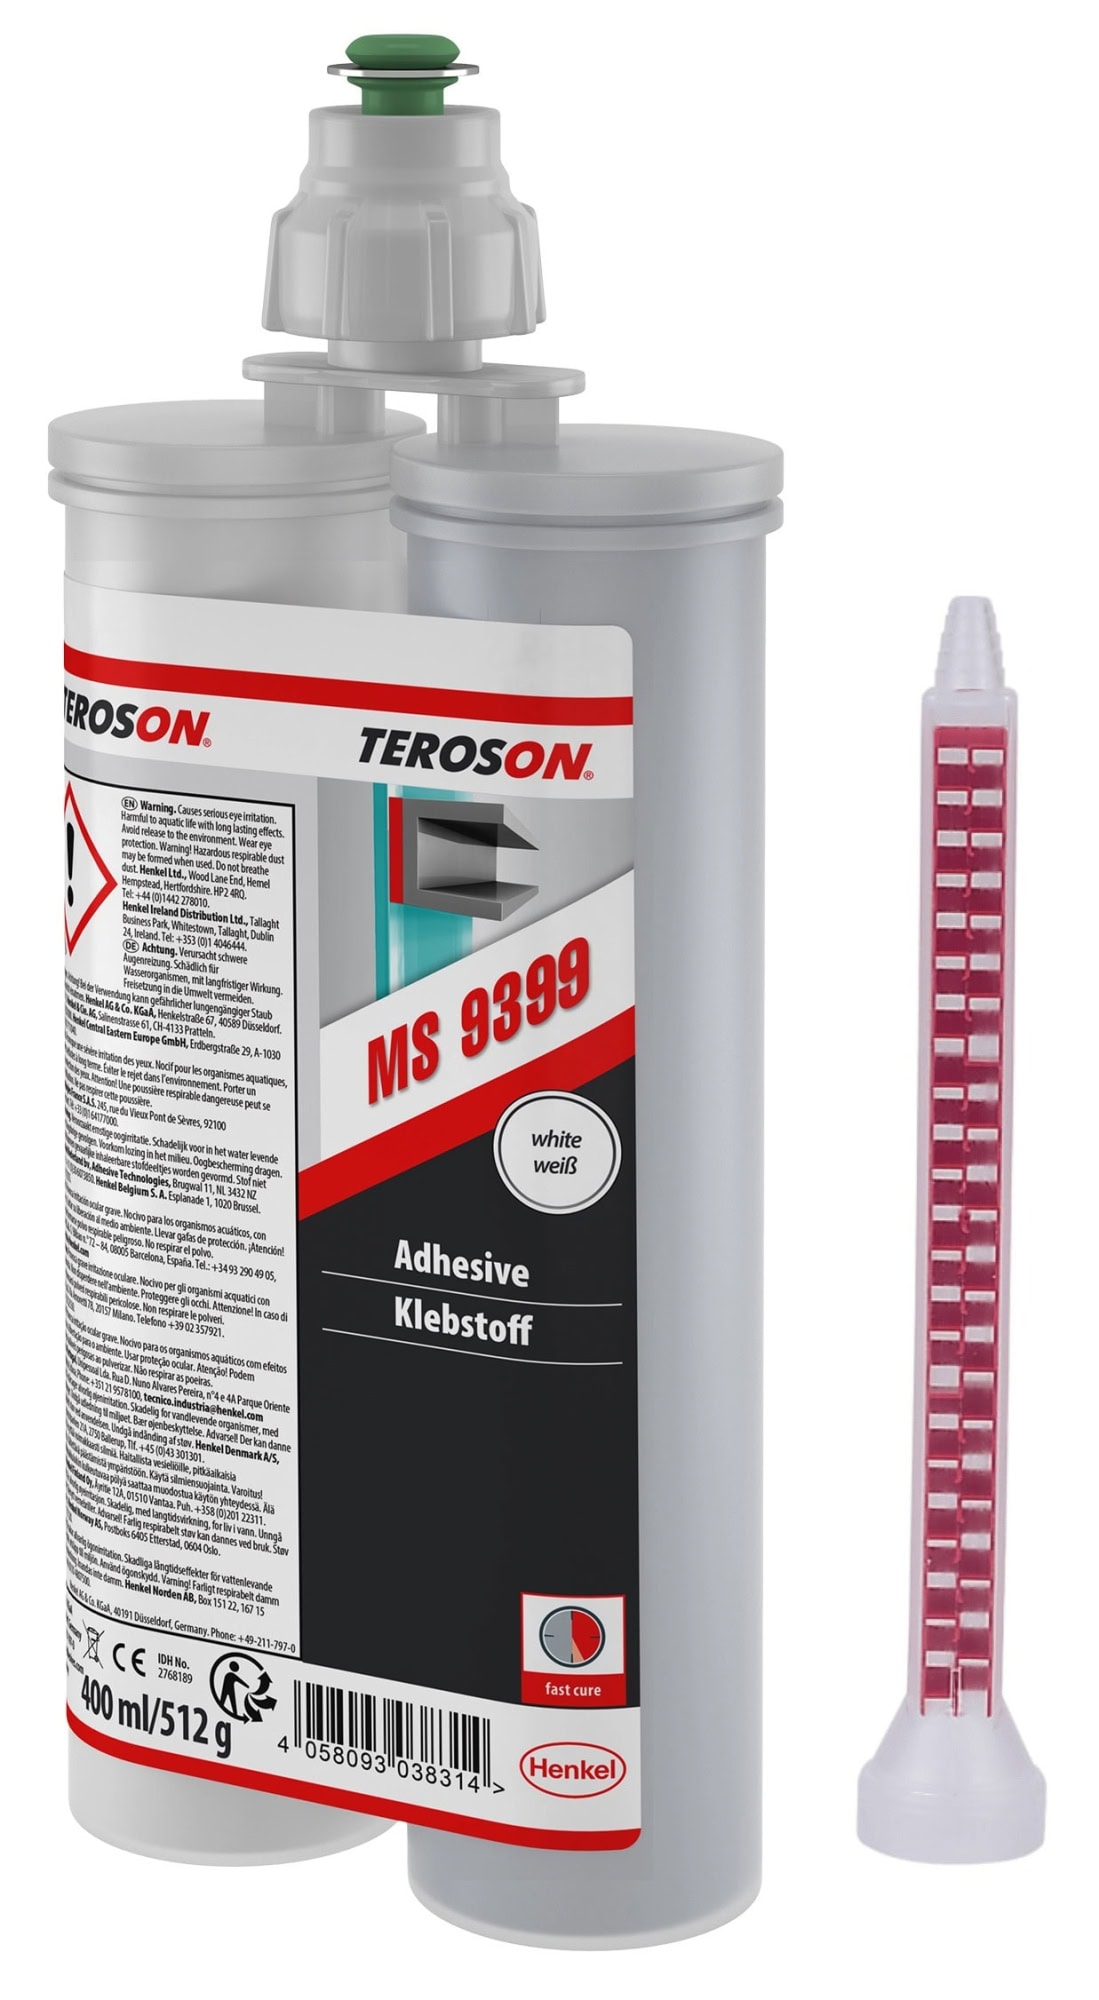 Henkel™ Teroson® Silanmodifizierter Polymer Kleb- und Dichtstoff MS 9399, 400 ml, Weiß, Thixotrop, 2K, 2768189, Pilzbeständig